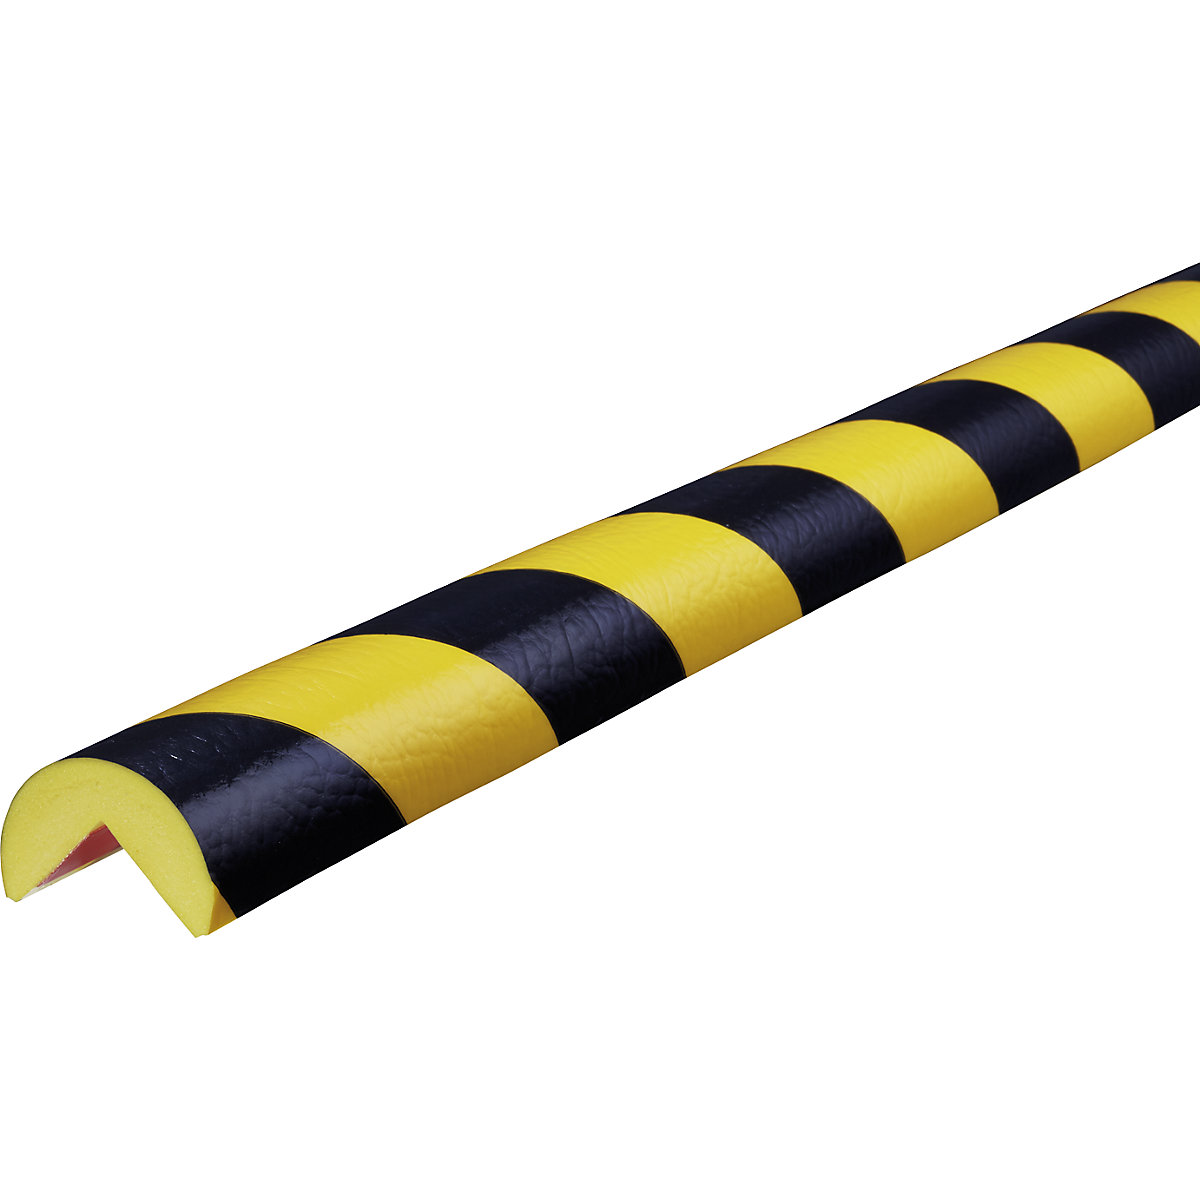 Proteção de cantos Knuffi® – SHG, tipo A, reutilizável, unidade de 1 m, preto/amarelo-2